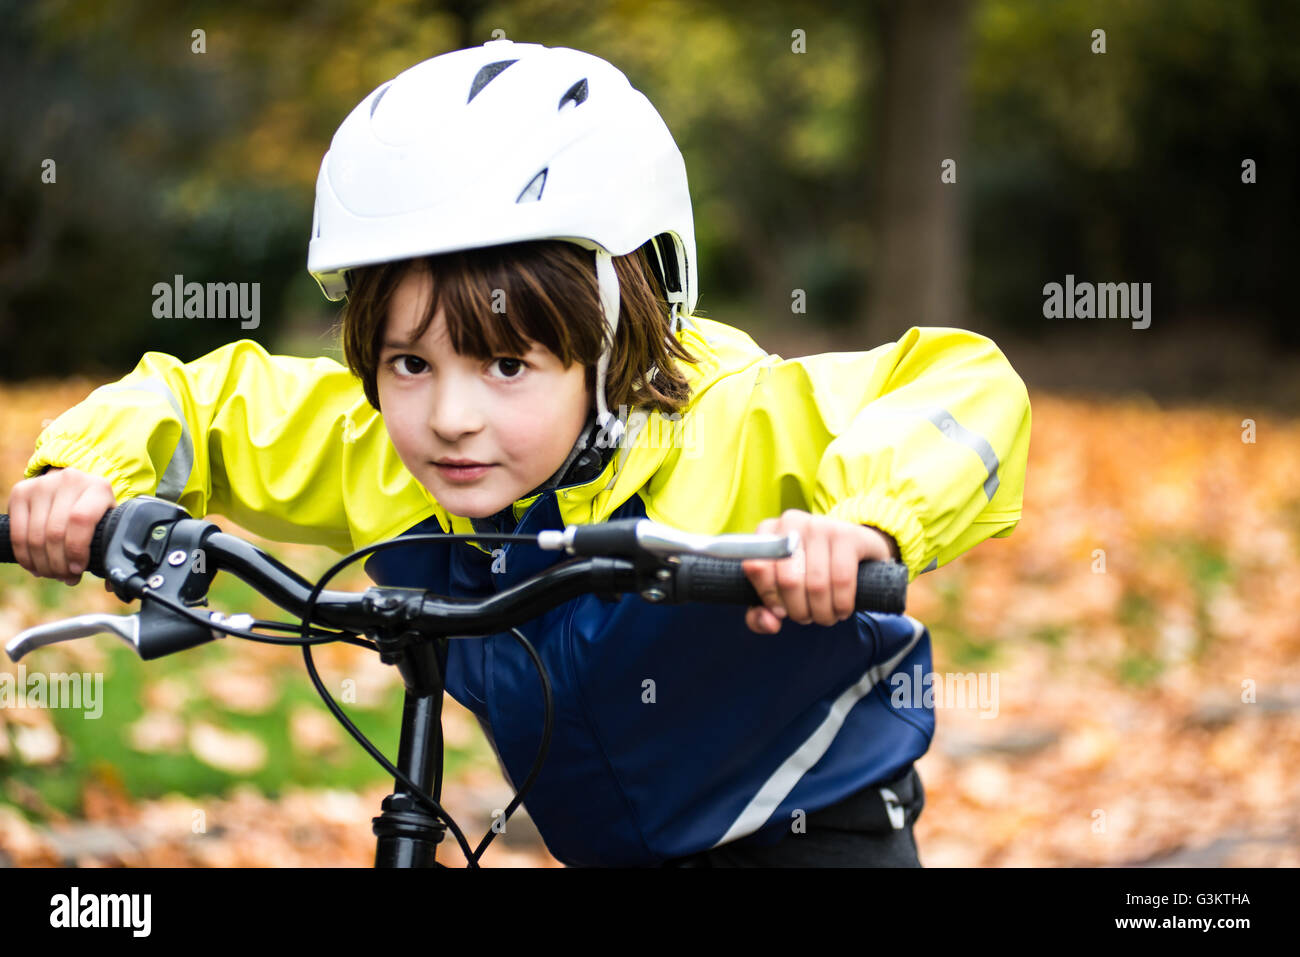 Niño Feliz Una Bicicleta Con Gafas Sol Casco Equipo Protección: fotografía  de stock © caxa75onohoi #205647160